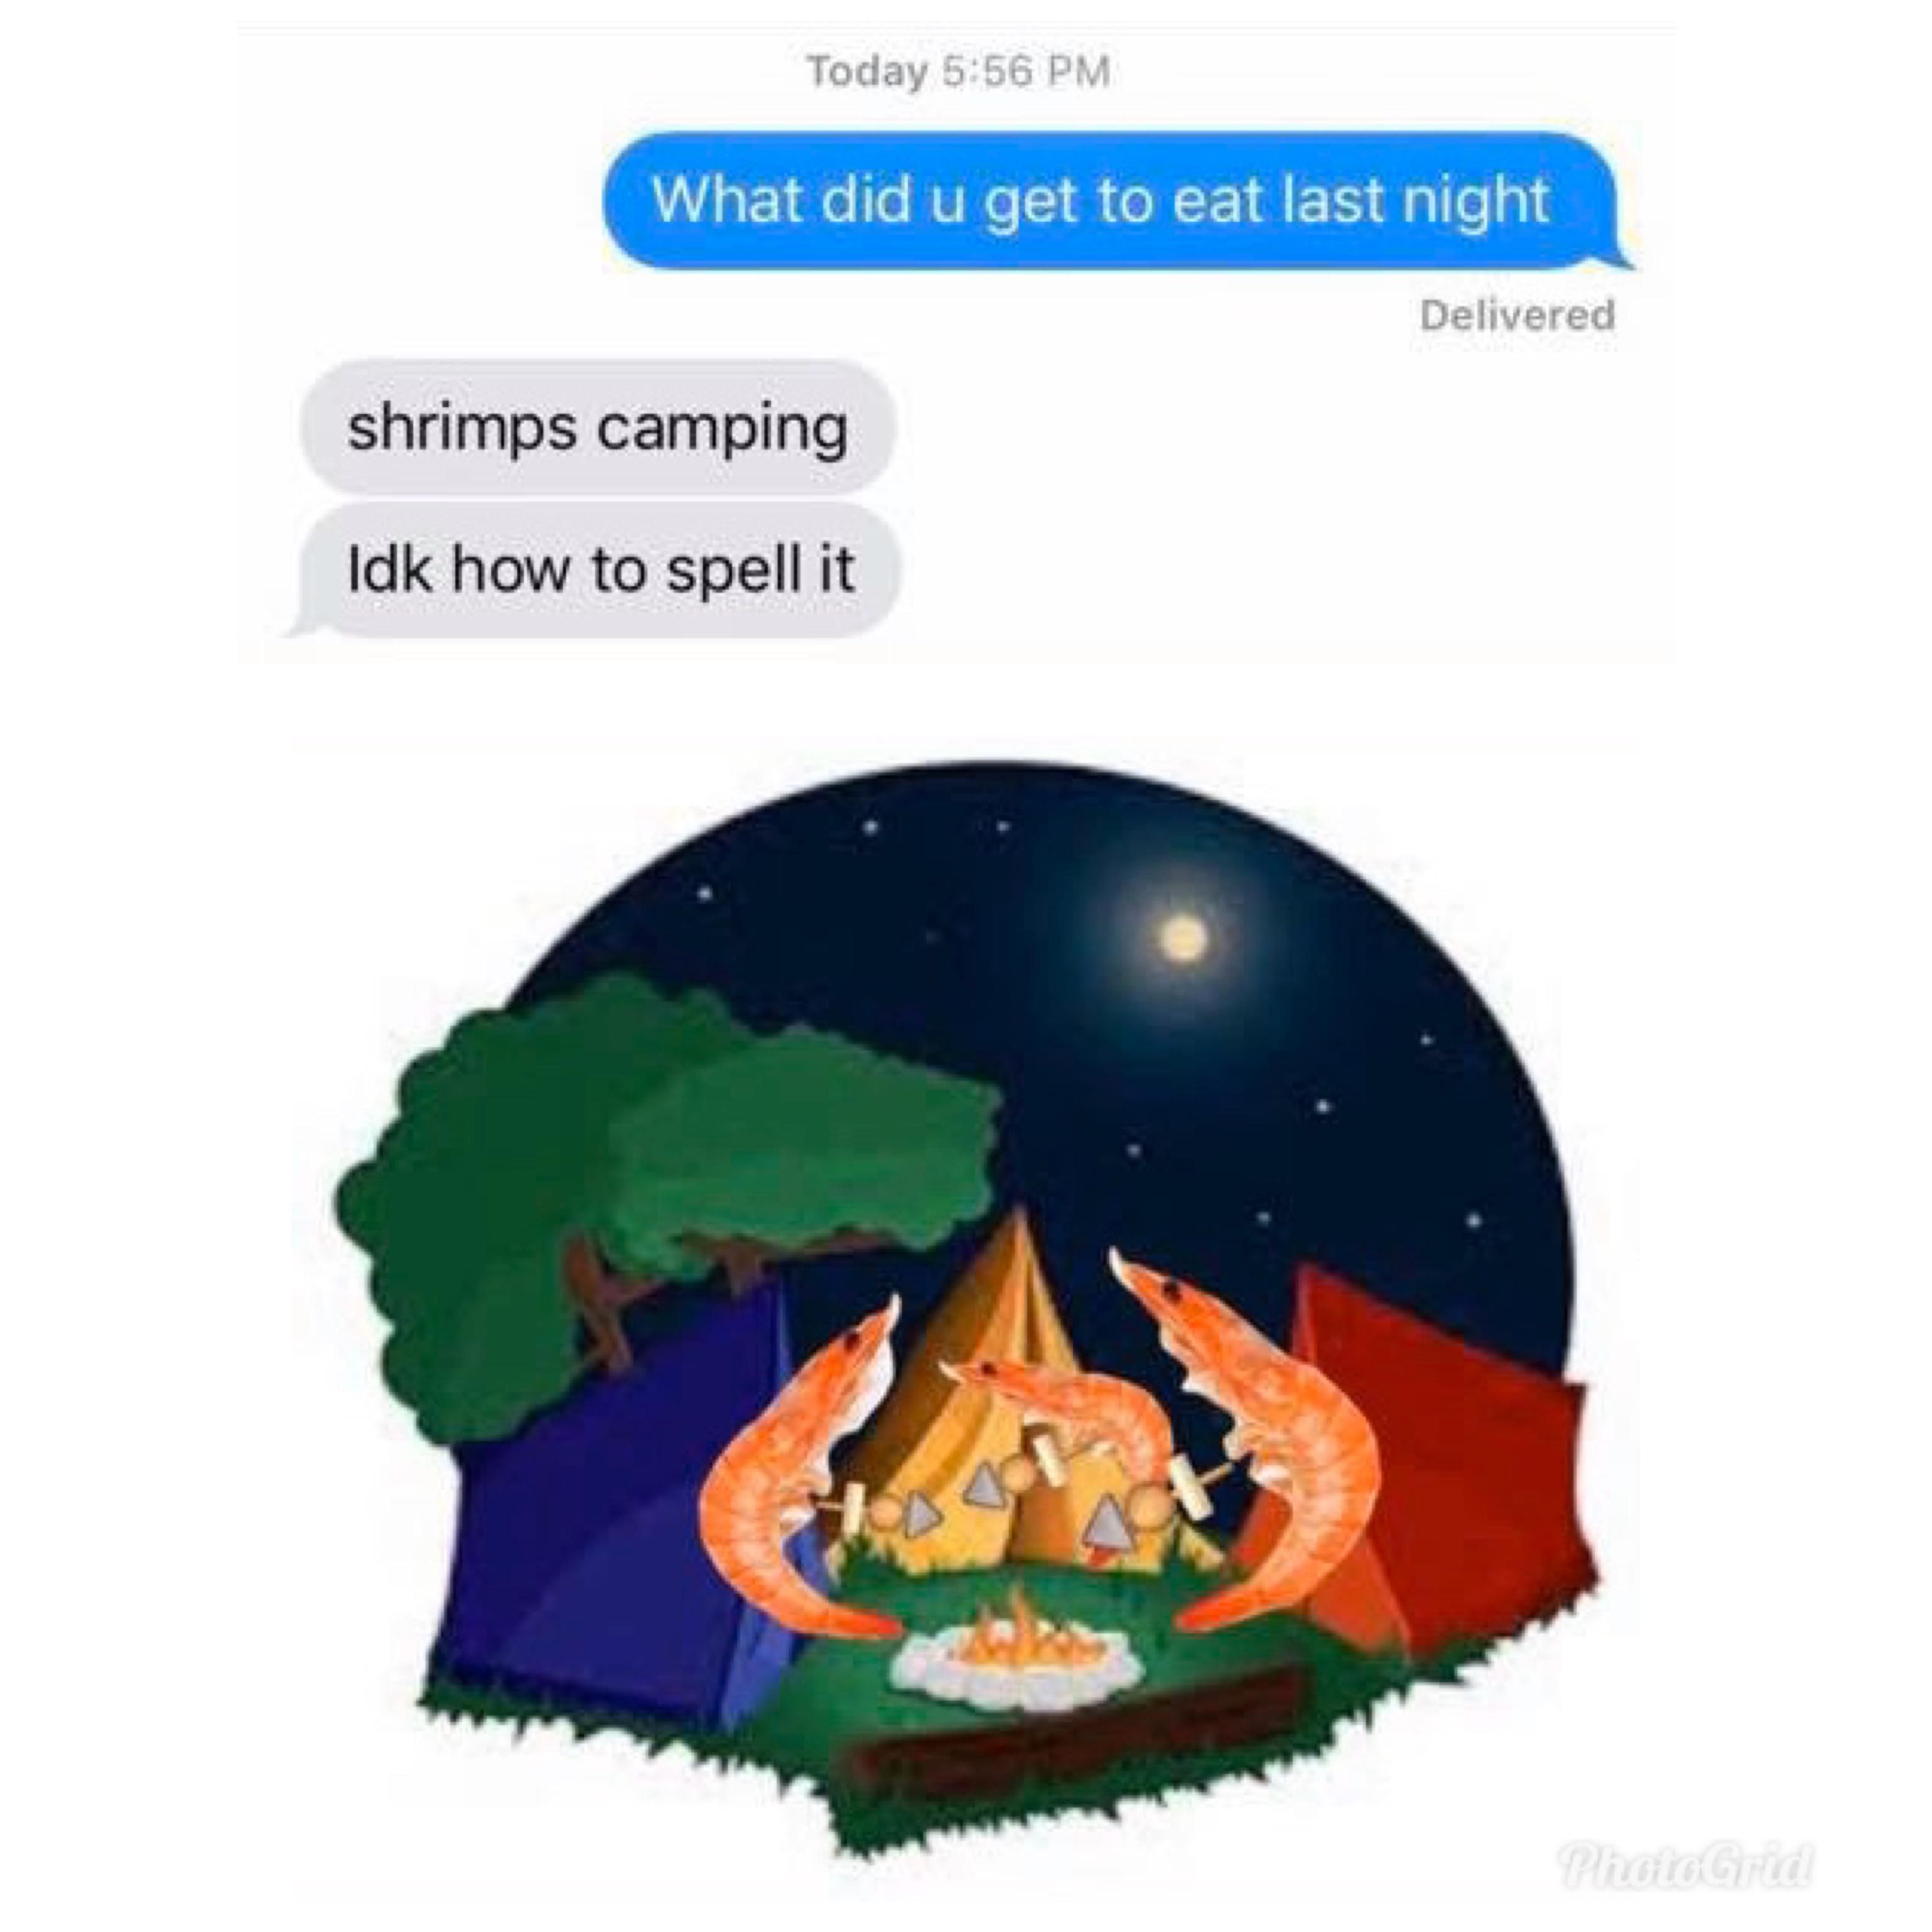 Shrimps camping.